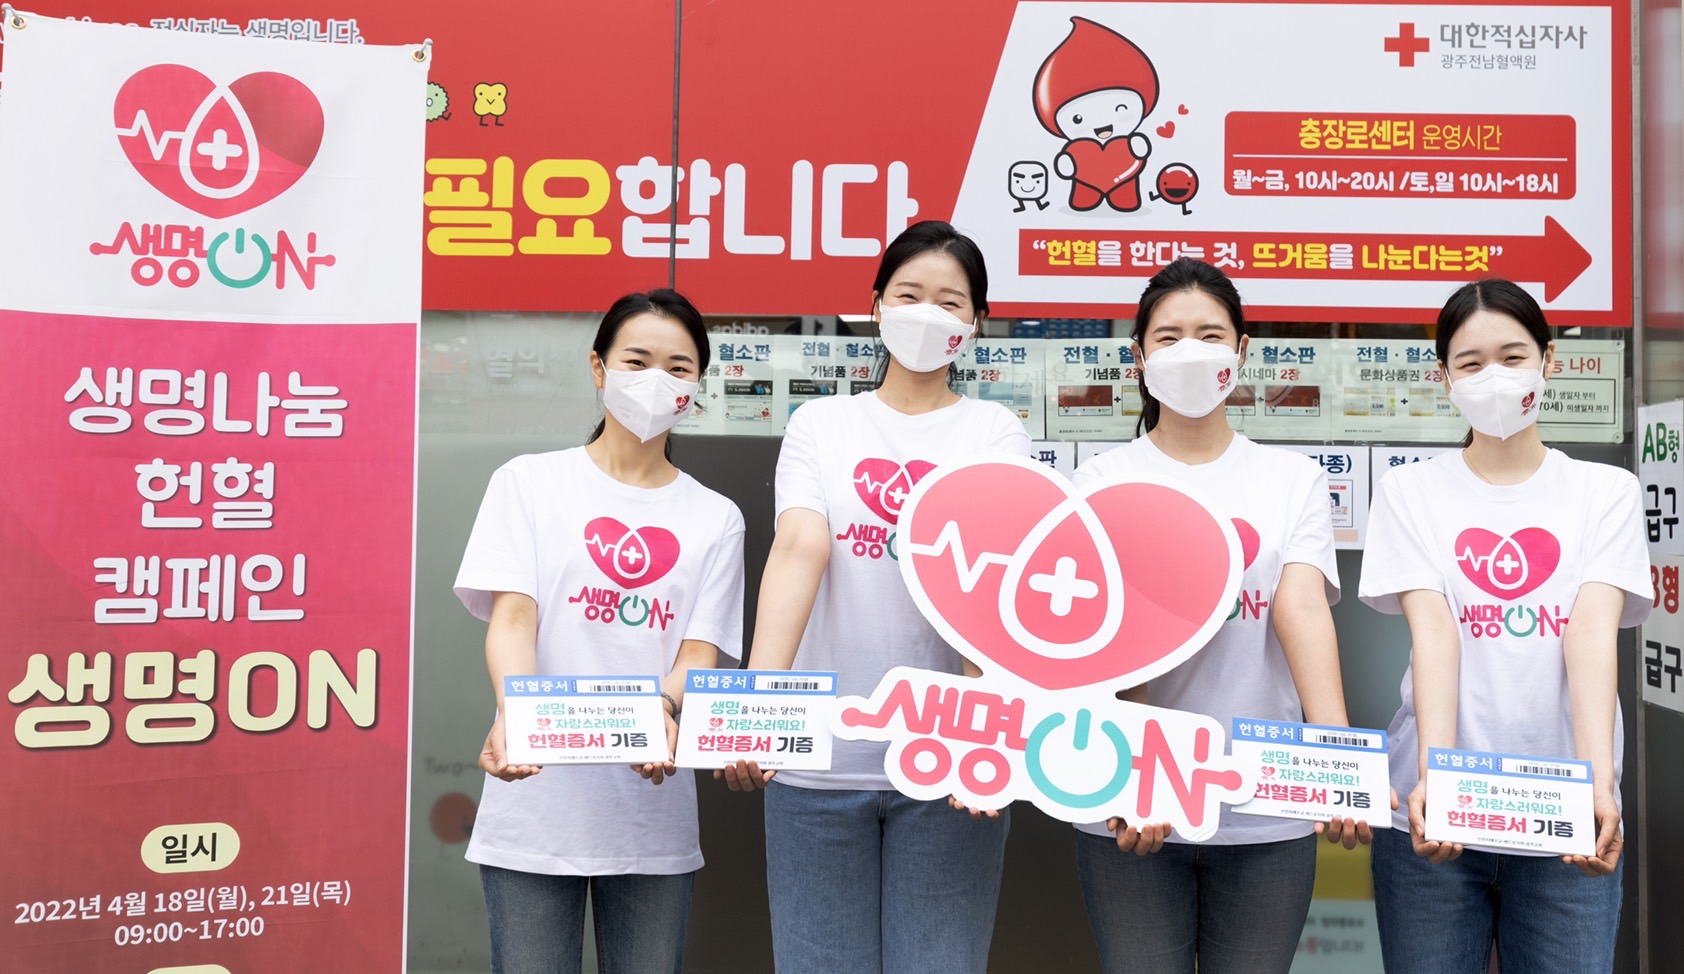 1-萬-8-千名獻血人士協力保障韓國血液供應的穩定